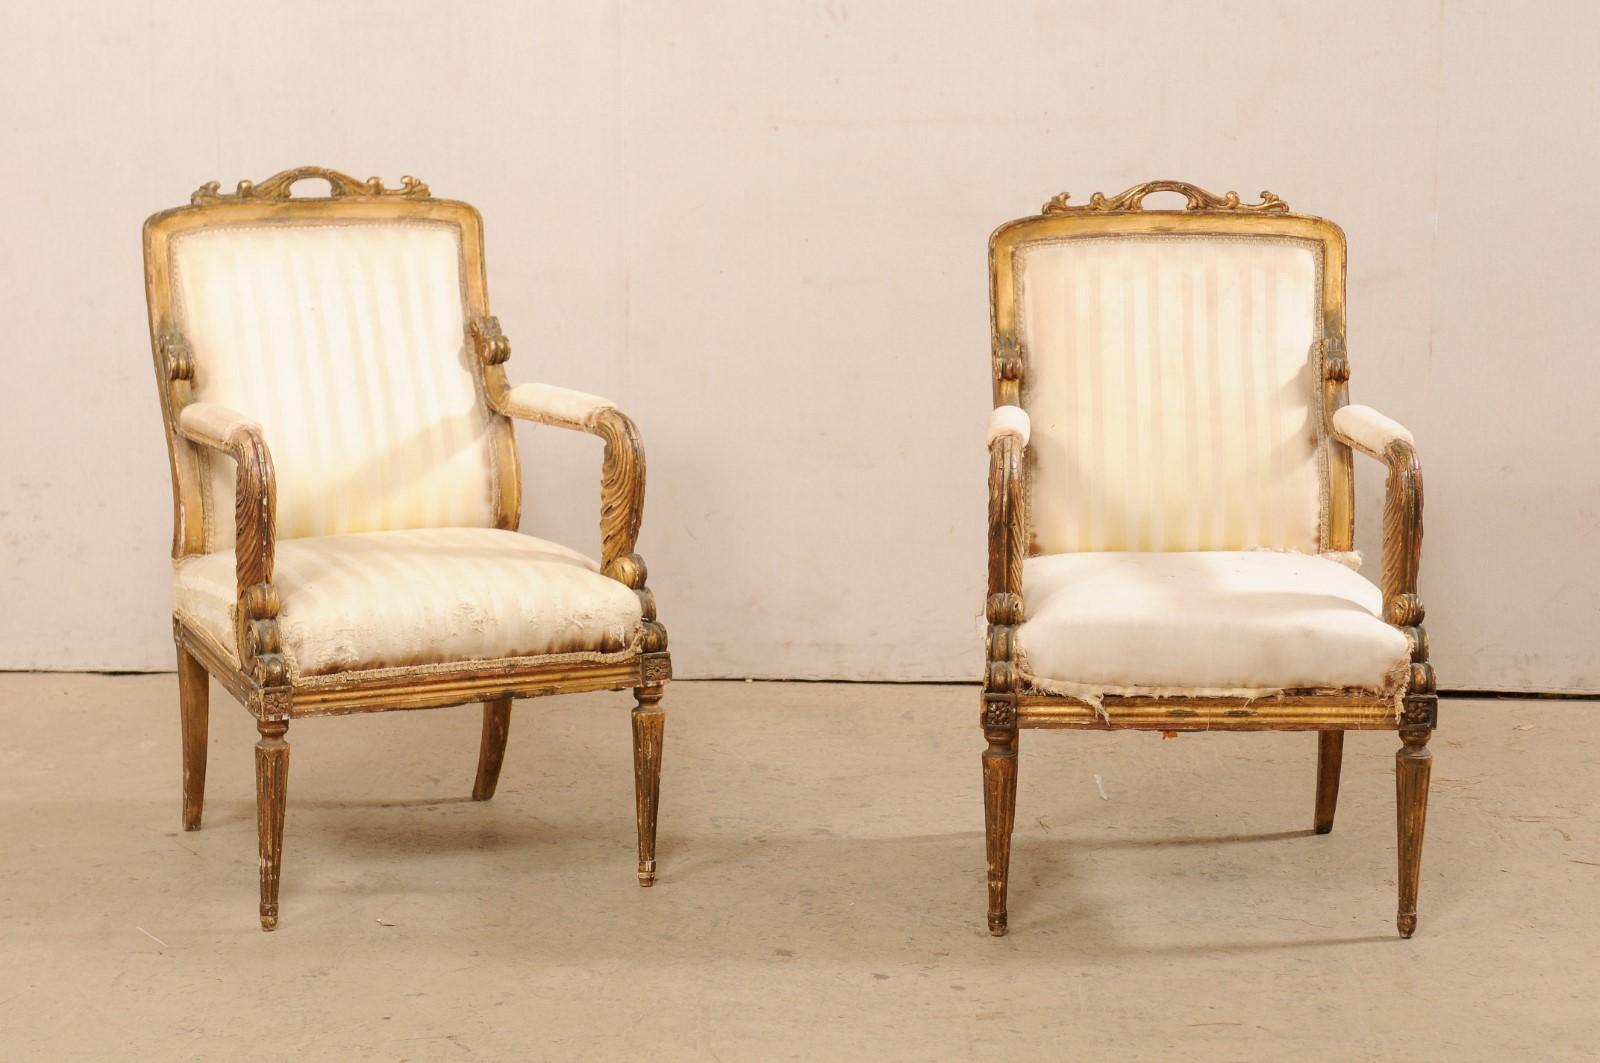 Ein französisches Paar geschnitzter Fauteuil-Sessel im Louis-XVI-Stil aus dem frühen 19. Jahrhundert. Dieses antike Paar Sessel aus Frankreich, sind in der Hand in den Einflüssen von Louis XVI Zeitraum geschnitzt, jeweils mit rechteckigen